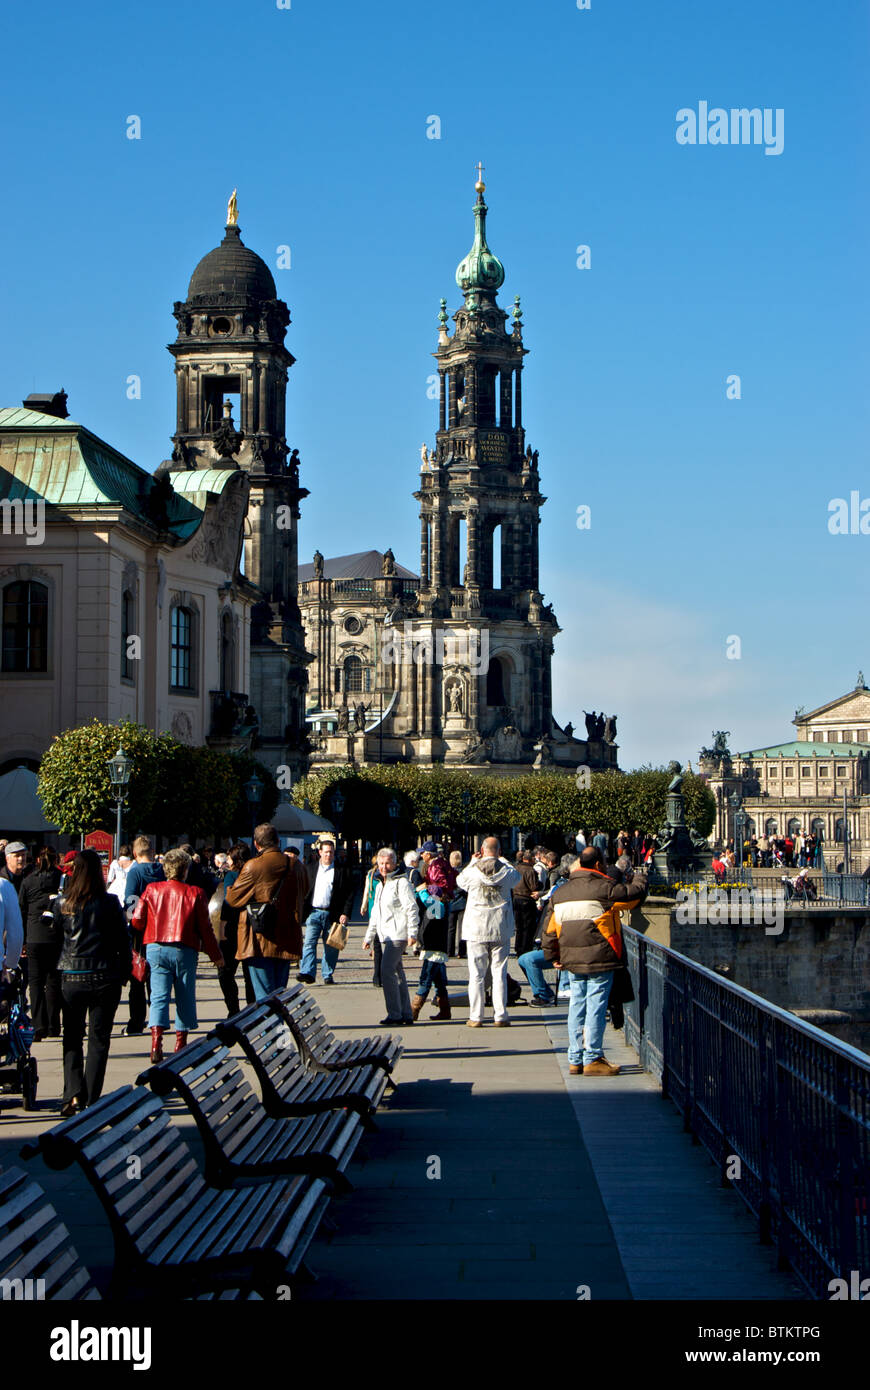 La terrasse de Bruhl promenade côtière le long de la rivière Elbe occupé avec les touristes piétons dans la vieille ville historique de Dresde Banque D'Images